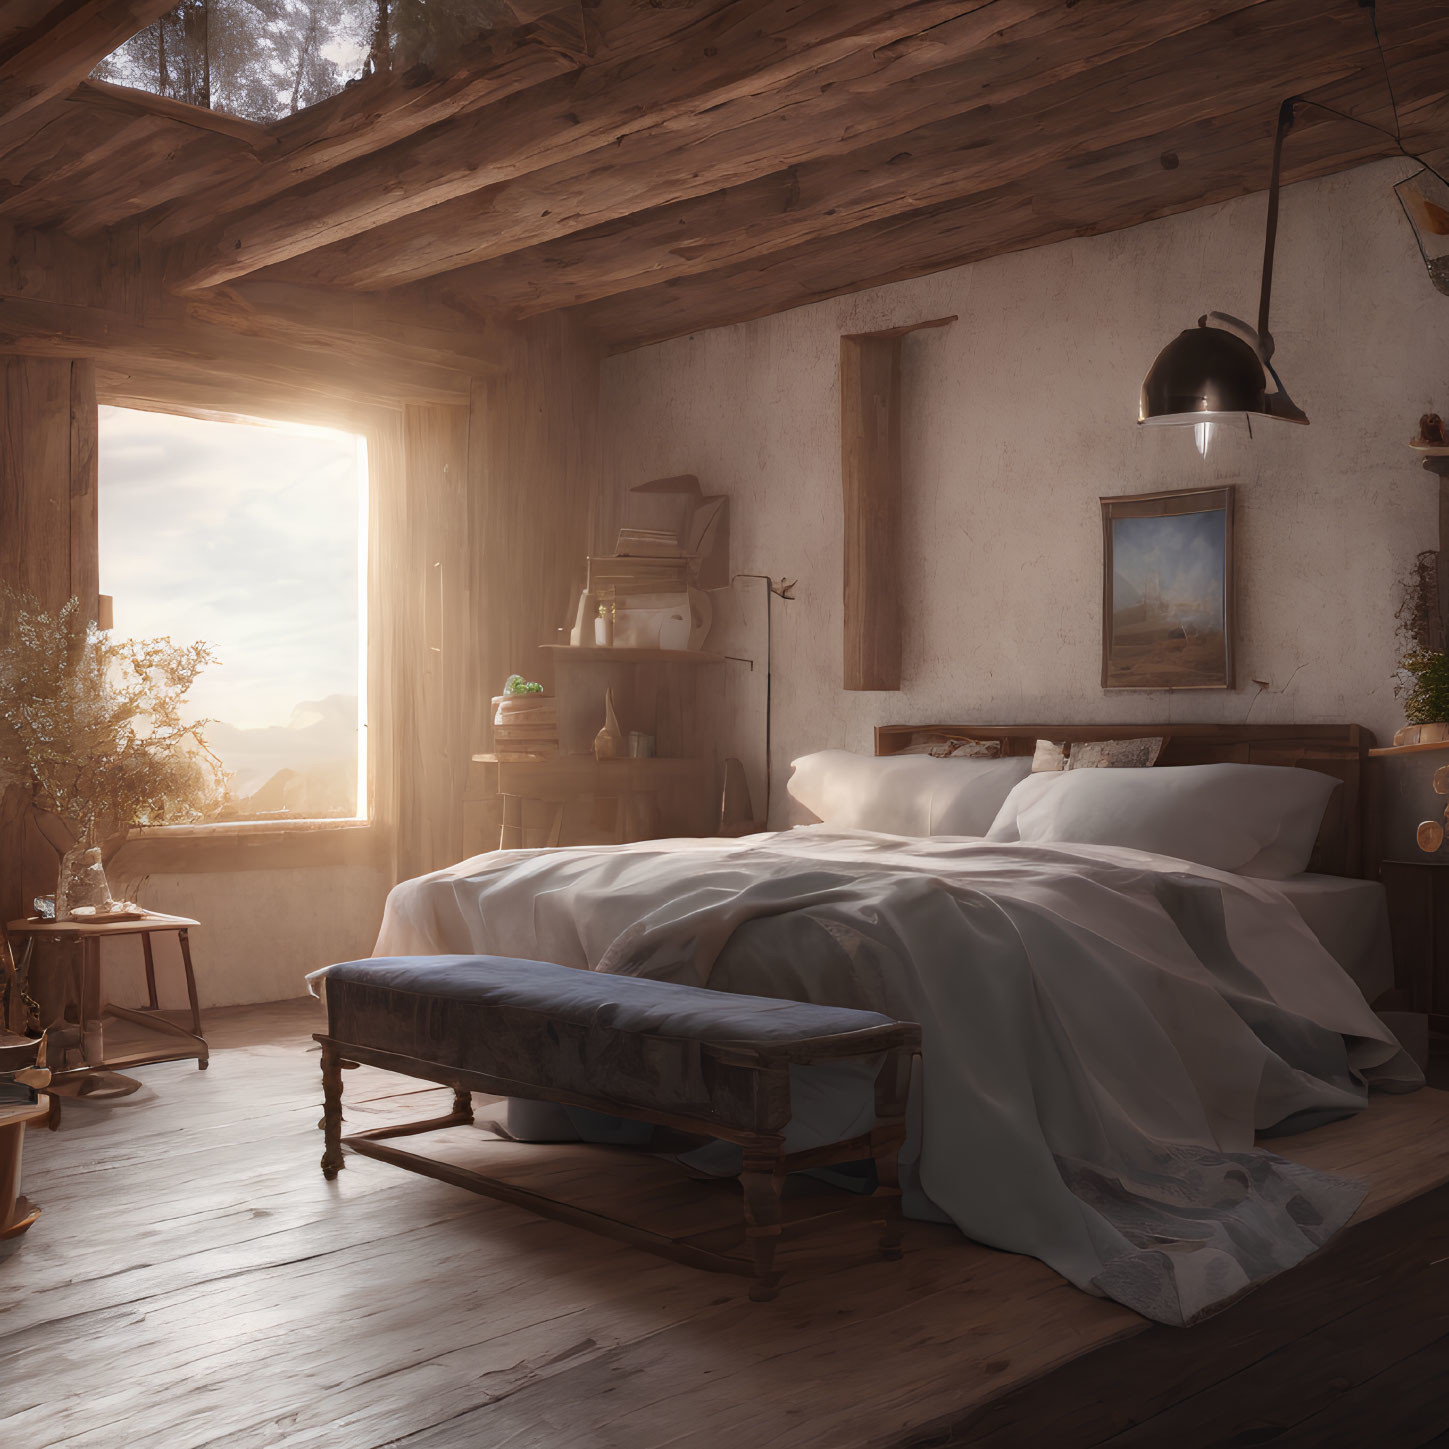 Cozy Rustic Bedroom with Sunlit Window & Wooden Beams